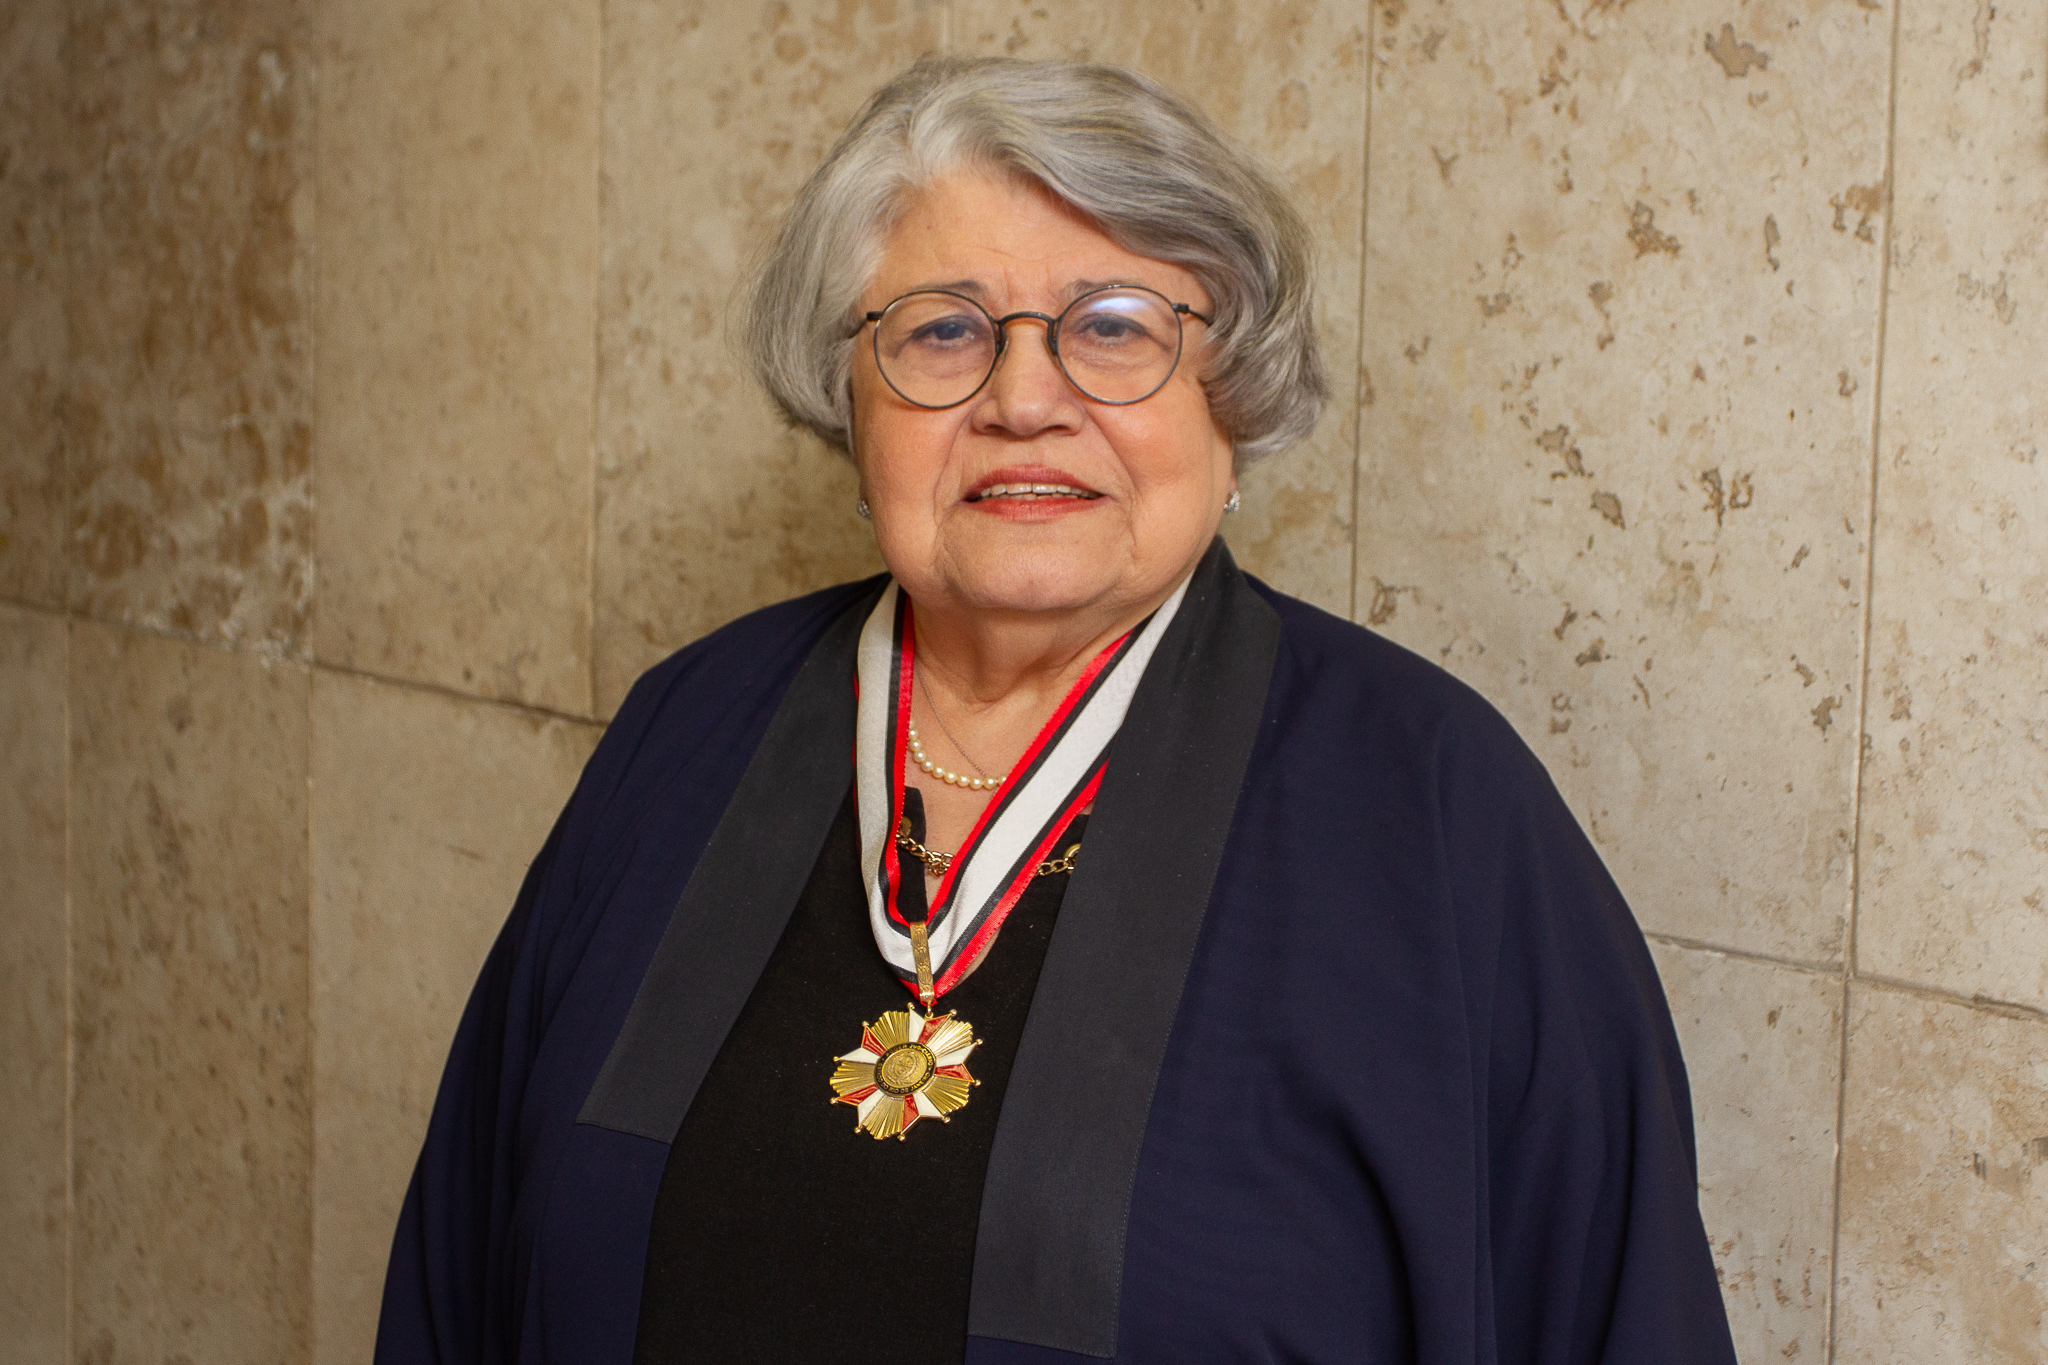 Foto posada da desembargadora Norma Suely Fonseca Quintes com a Medalha de Honra da Magistratura fluminense 